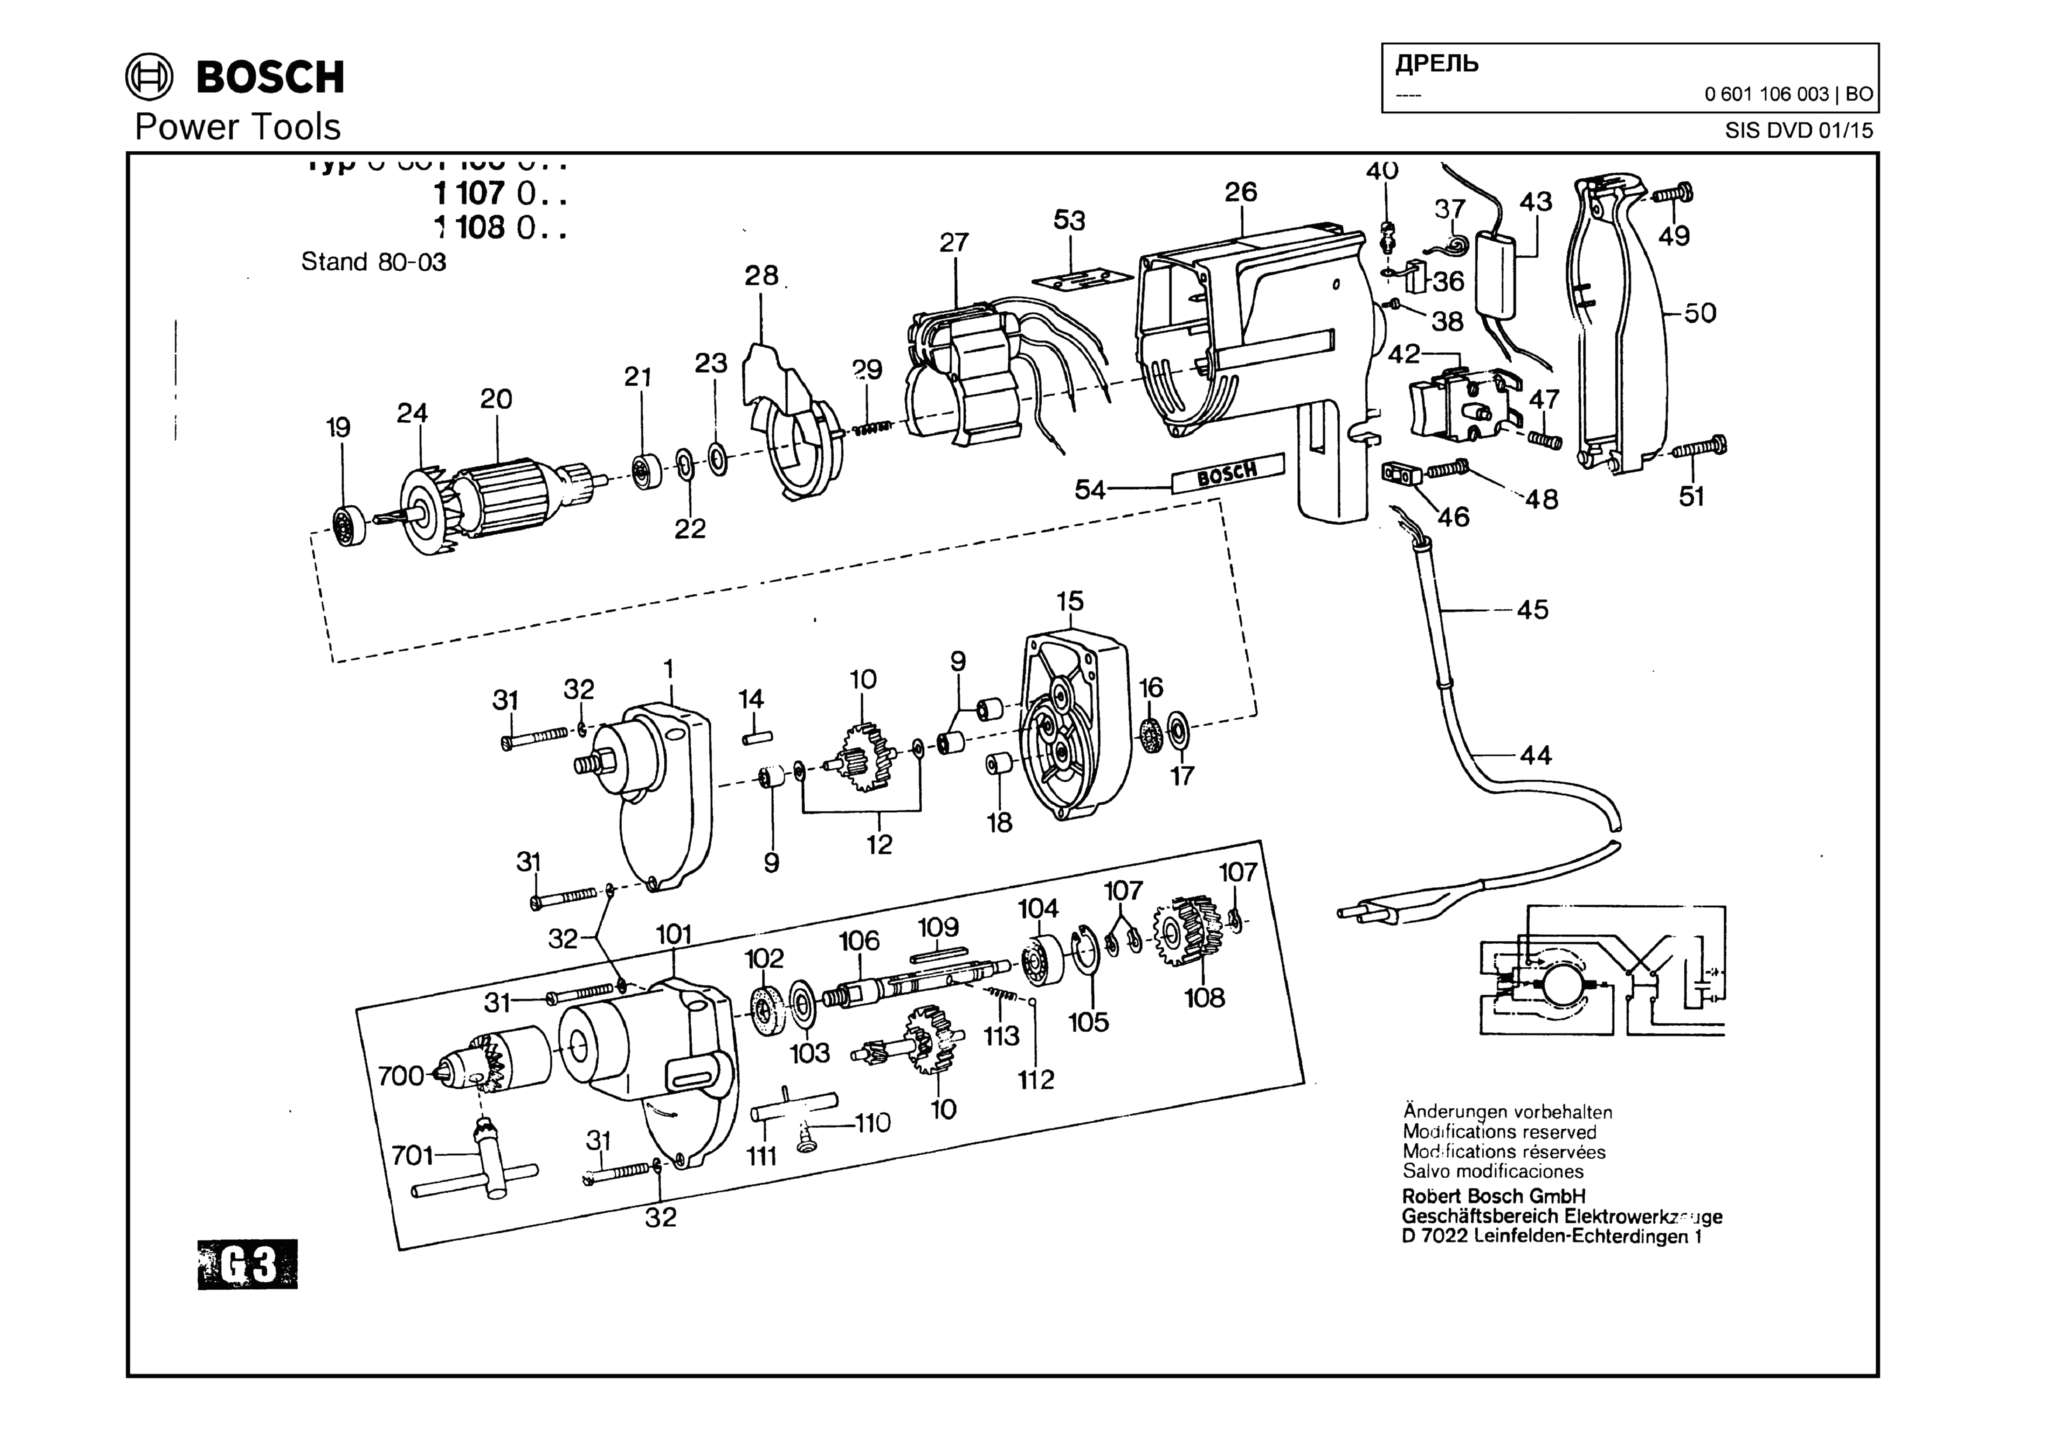 Запчасти, схема и деталировка Bosch (ТИП 0601106003)